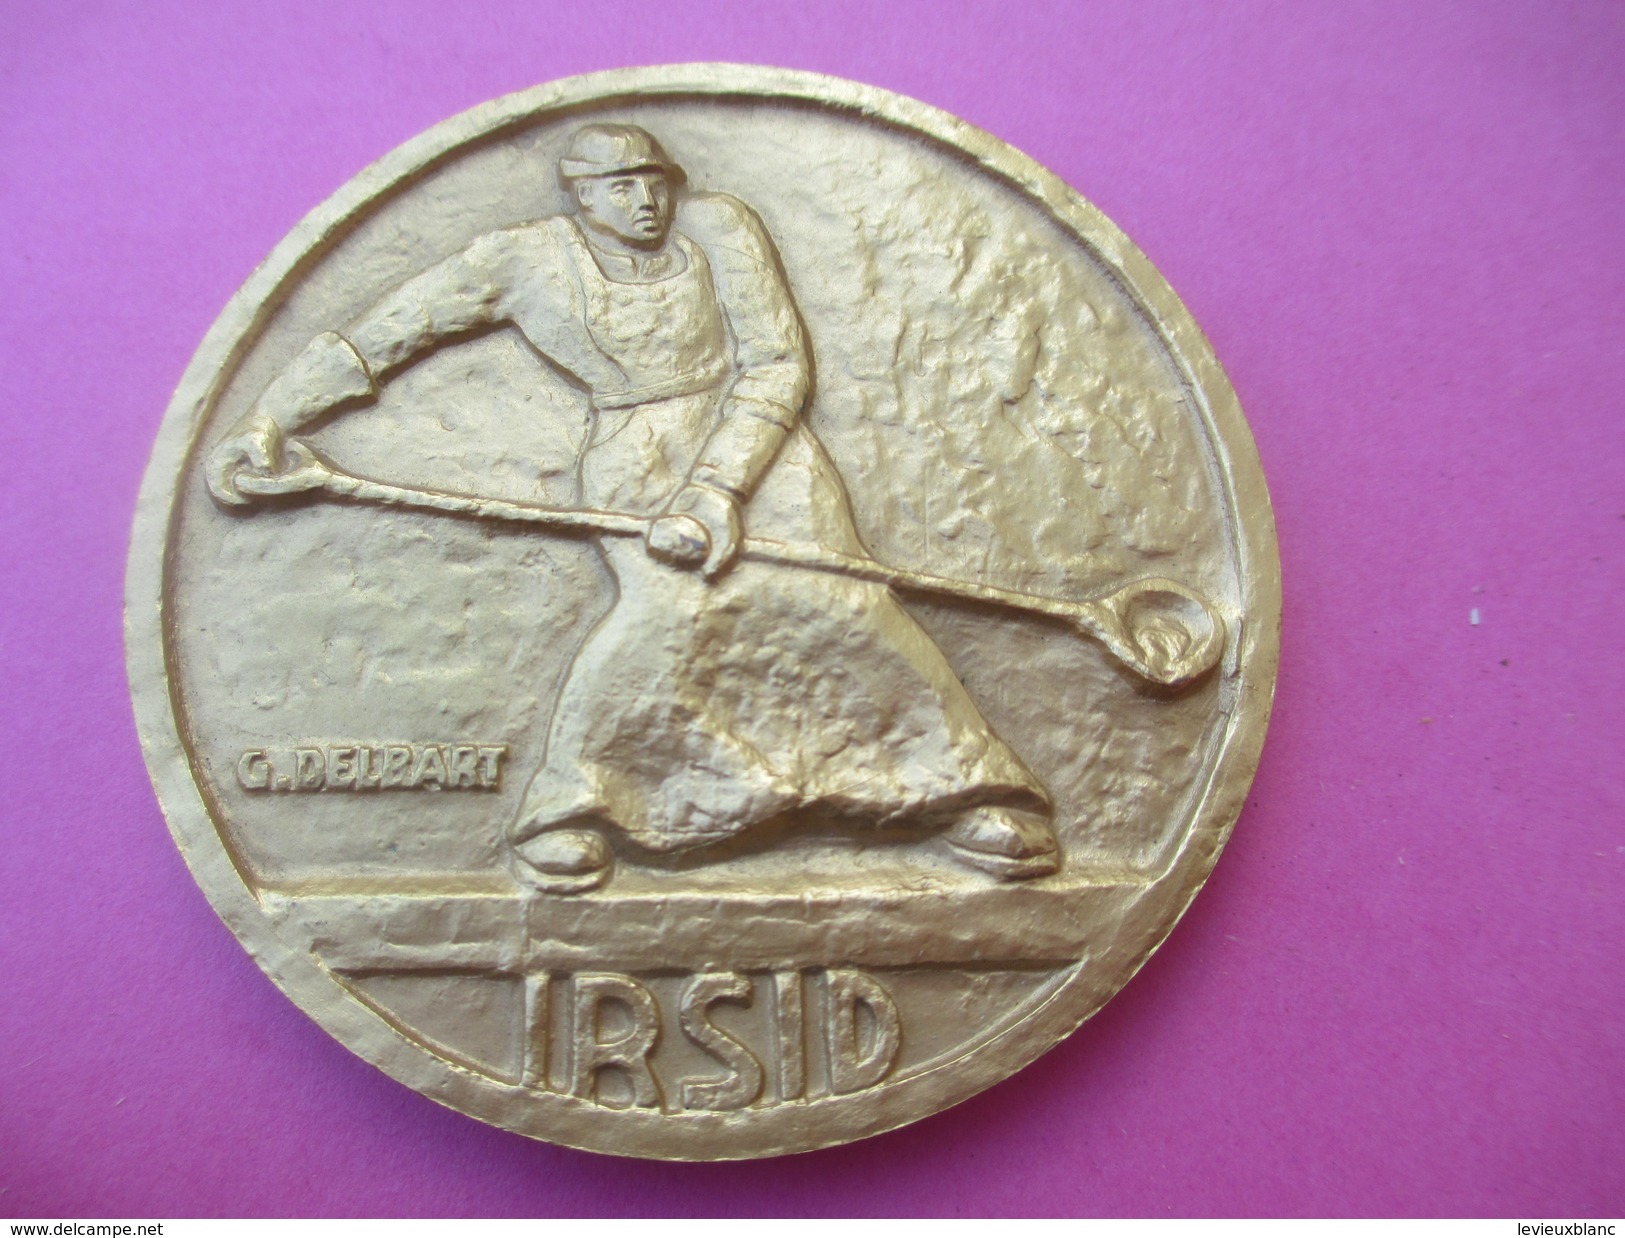 3 Médailles Ancienneté/IRSID/Institut De Recherche De La Sidérurgie/Bronze-Argent-Or/attribuées/1972-77-82        MED148 - France